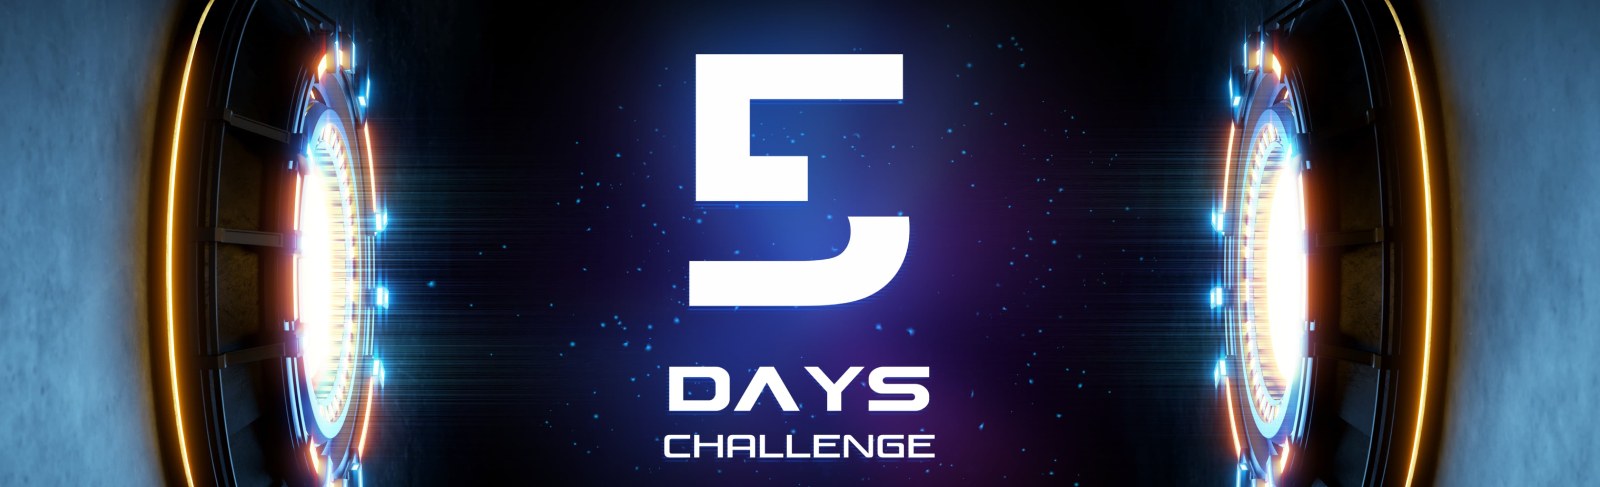 challenge sportif digital - 5 DAYS SPORT CHALLENGE